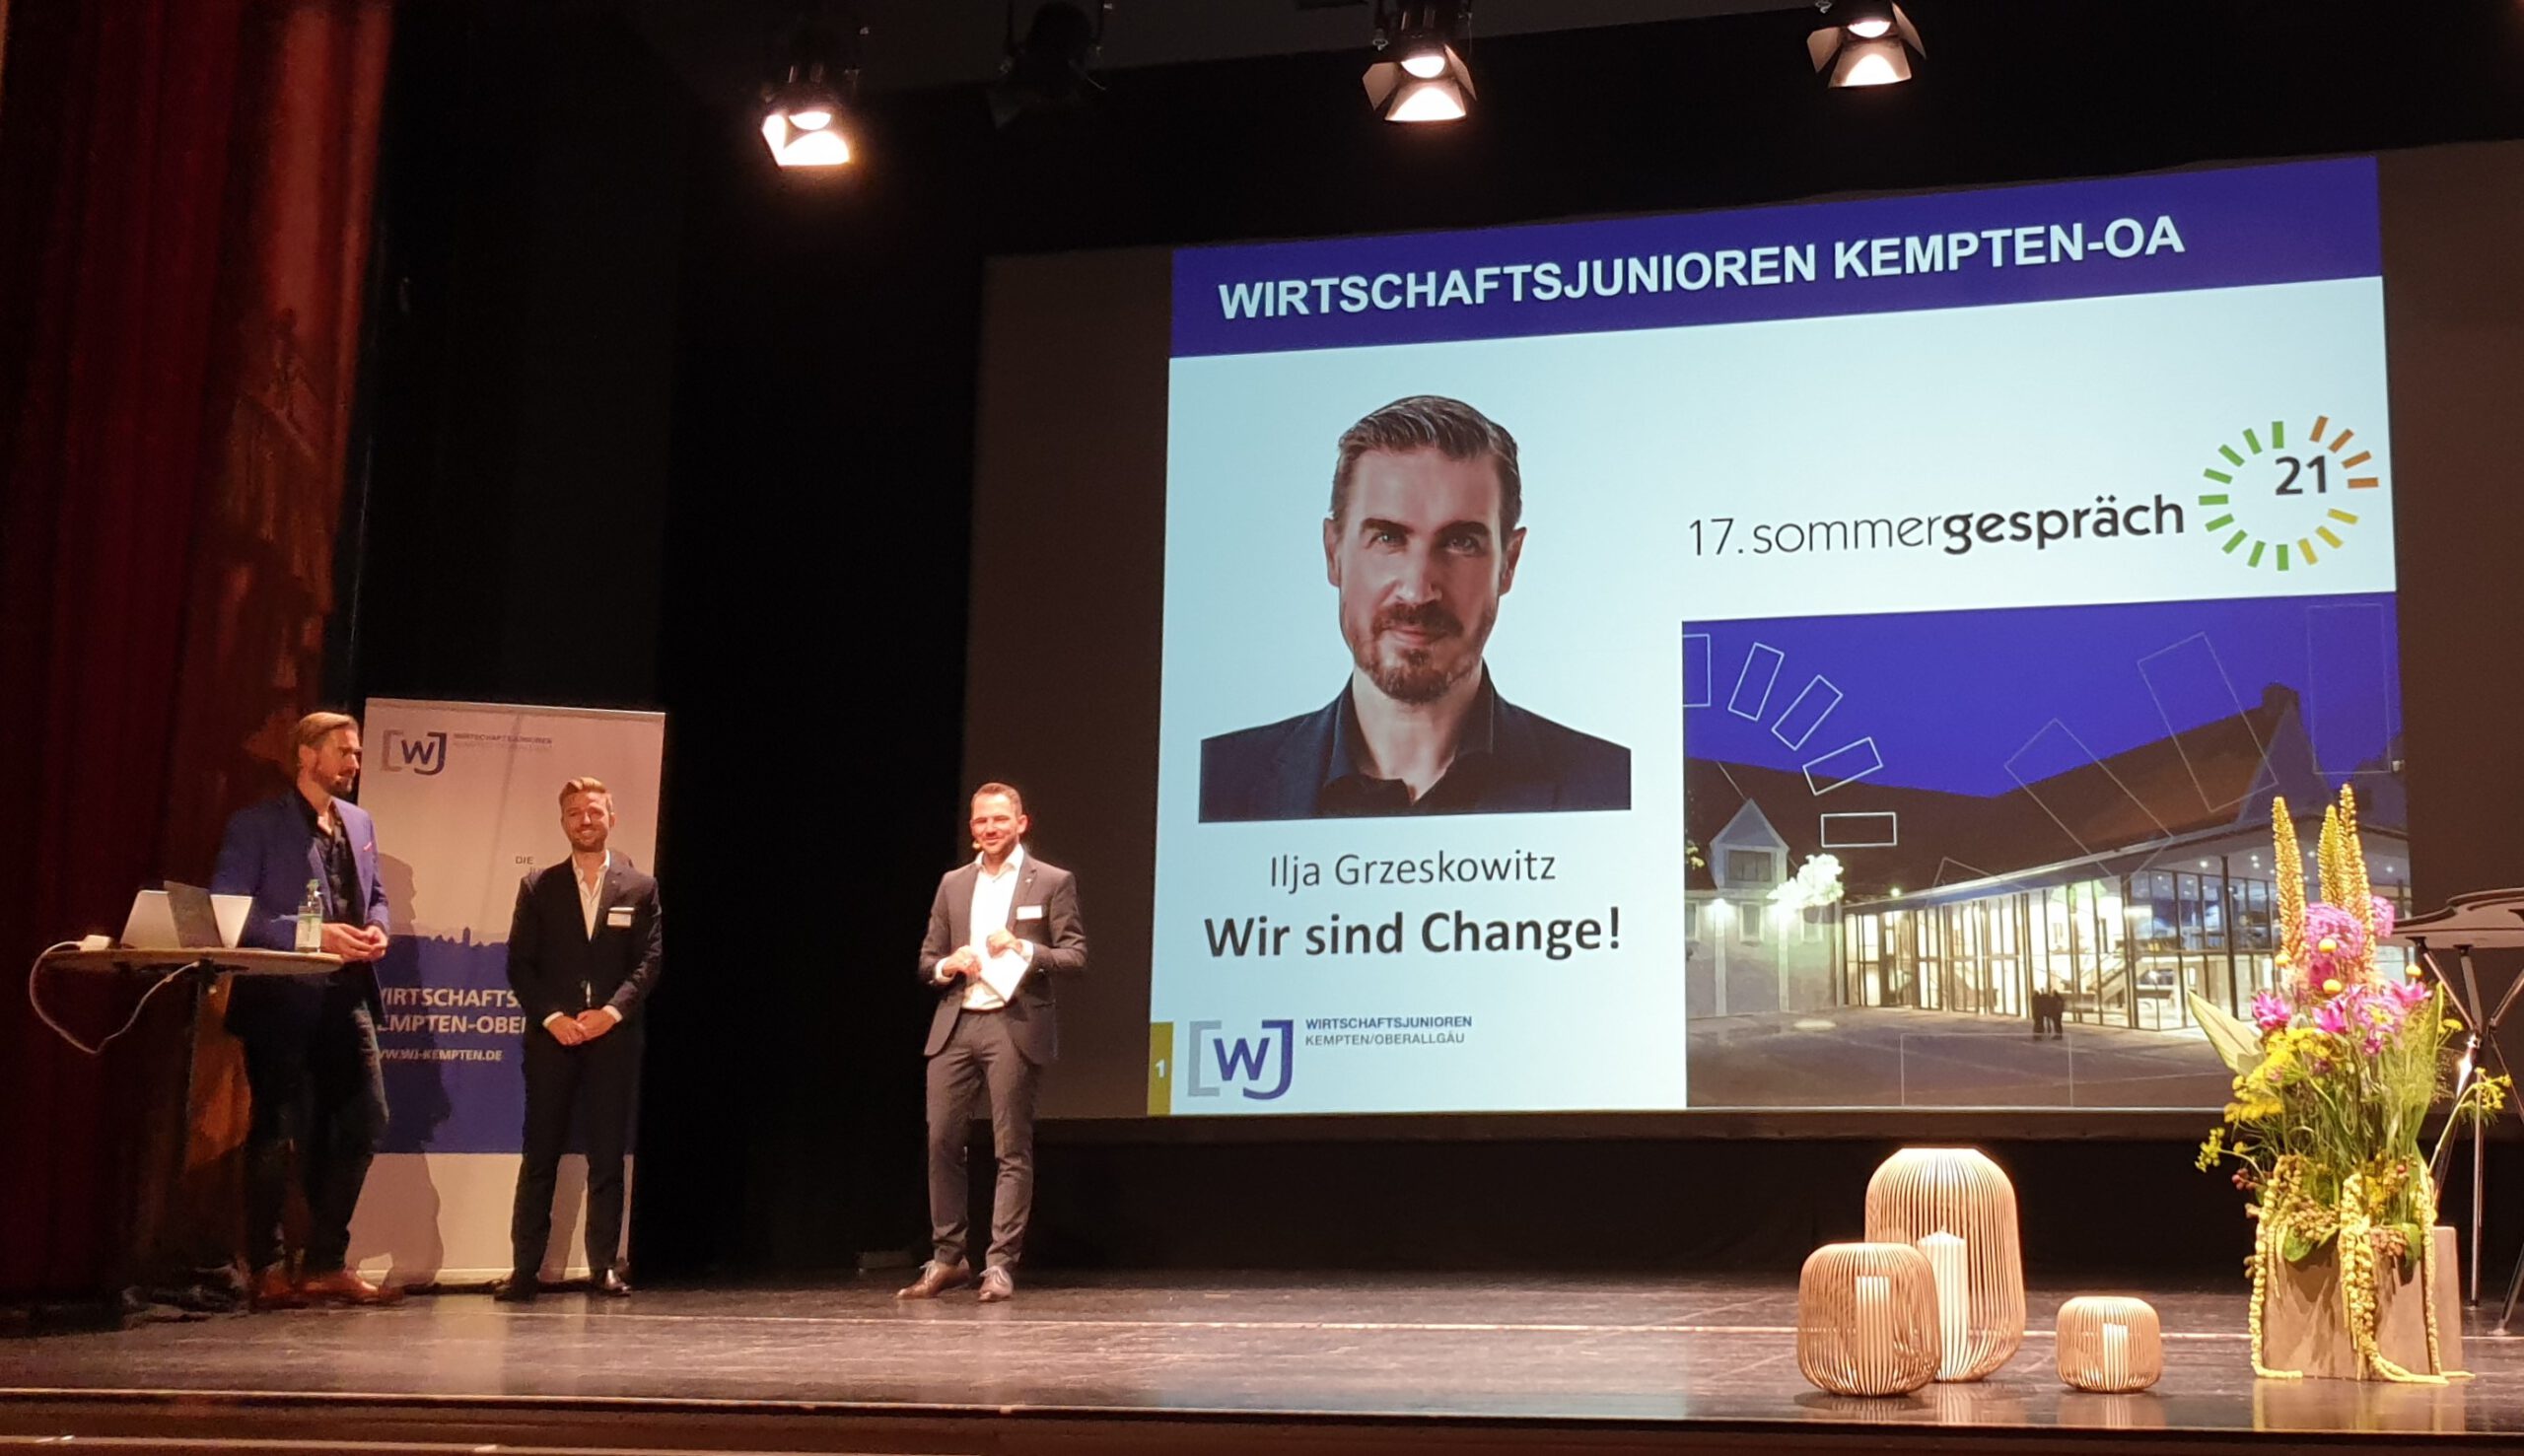 17. Sommergespräch der Wirtschaftsjunioren Kempten-OA | Wir sind Change!